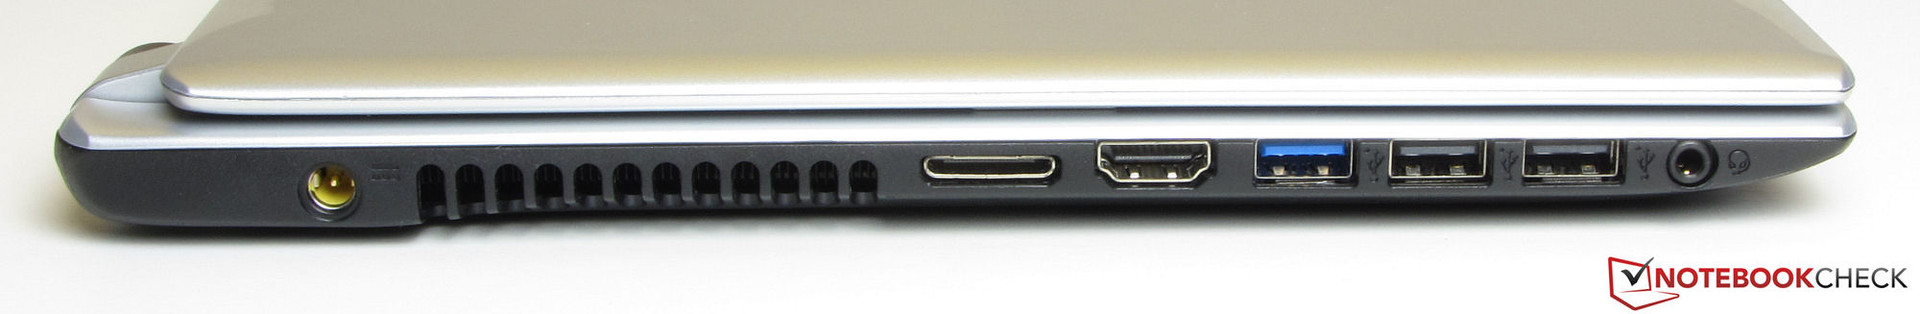 USB 2.0 External CD//DVD Drive for Acer Aspire V5-471g-32364g50madd